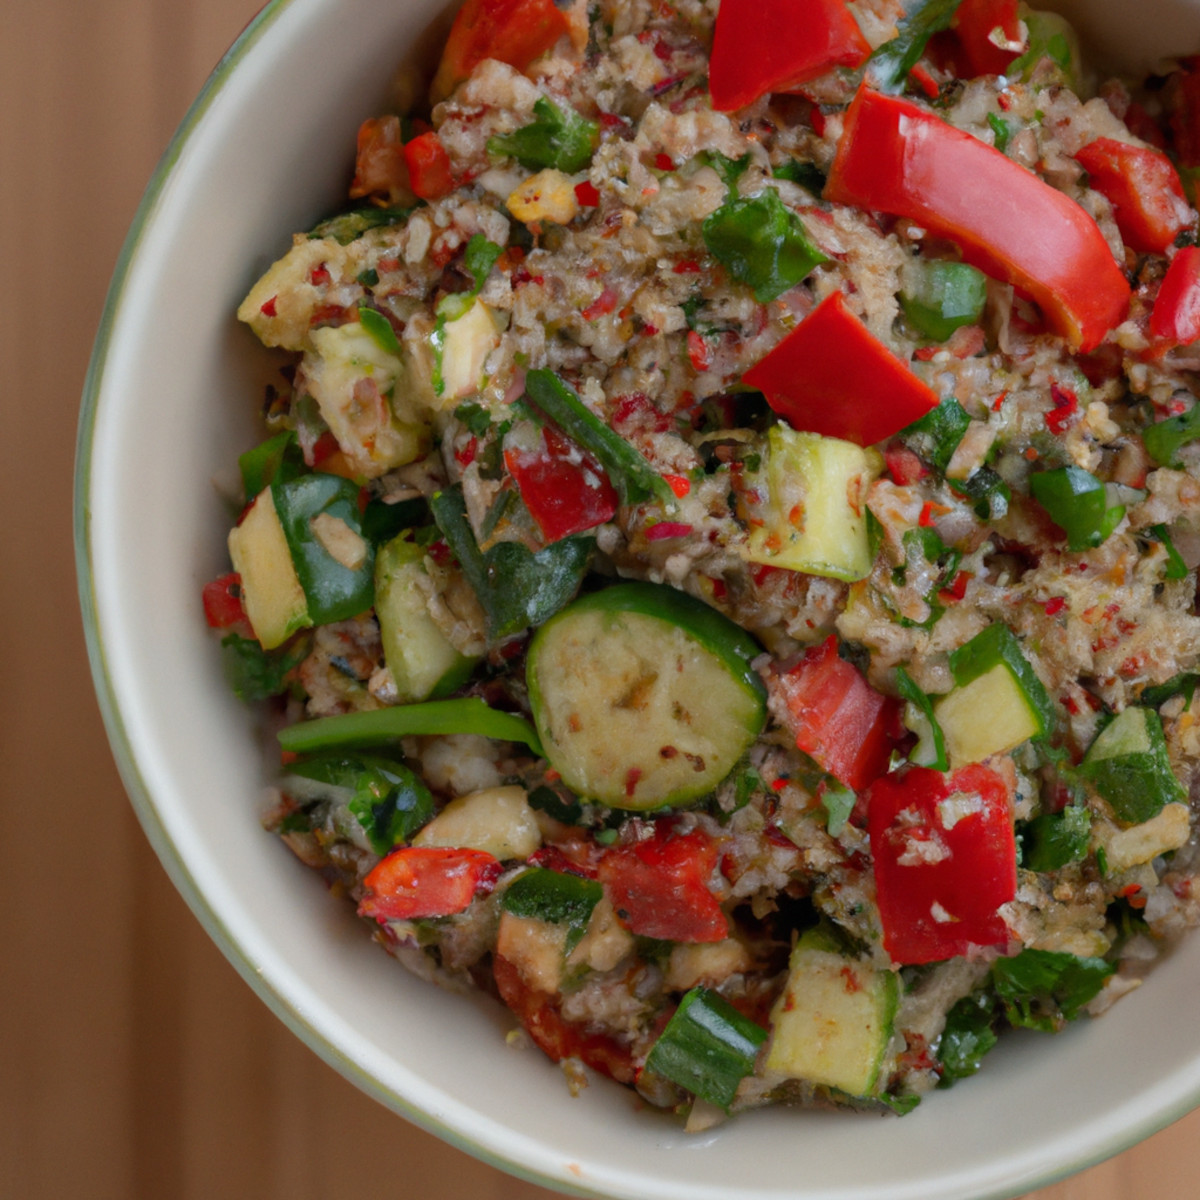 tamari flavored veggies and quinoa